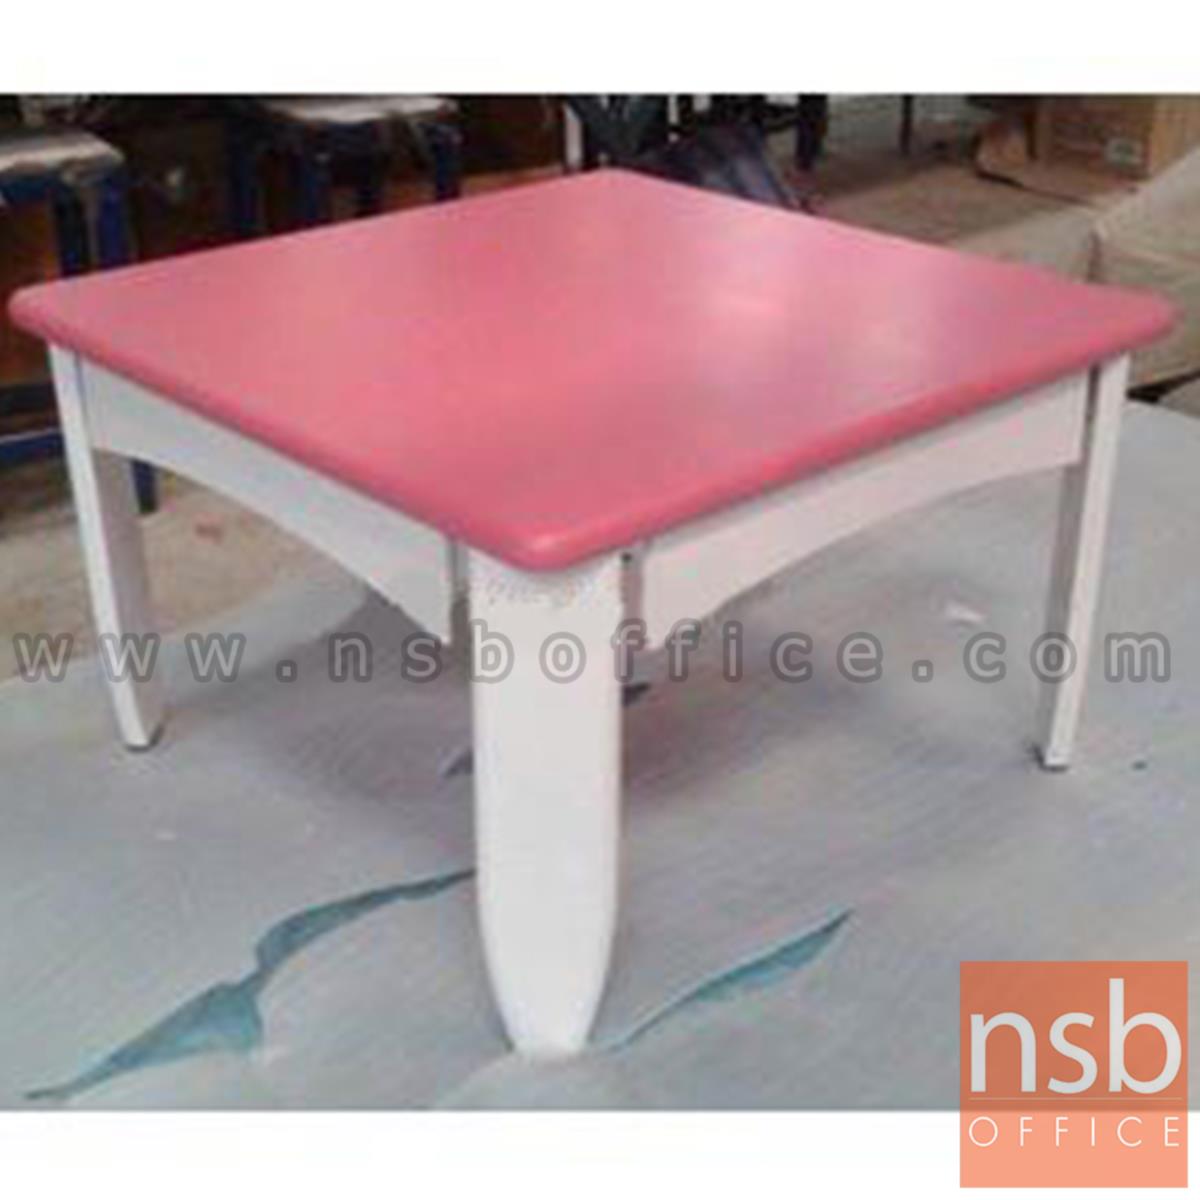 CL30461:โต๊ะญี่ปุ่นพับได้ ไม้ยางพารา 60*60*38 ซม. (สต็อก 4 ตัวหน้าร้าน)  สีสันสดใส 